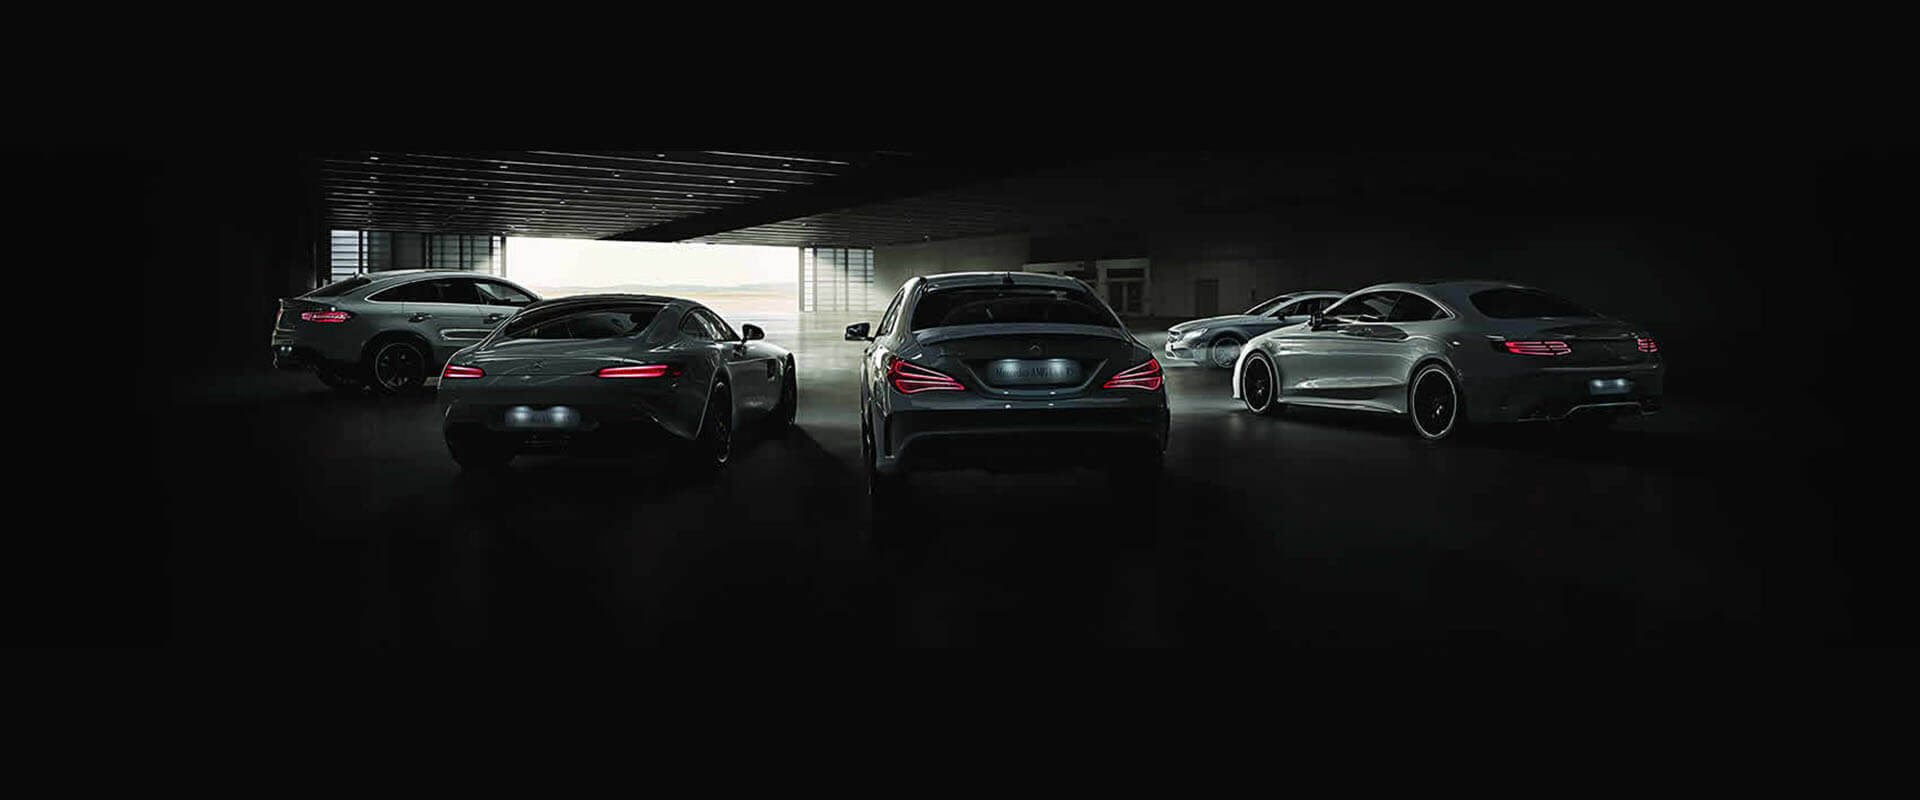 Mercedes-AMG, a divisão de alta performance da Daimler AG